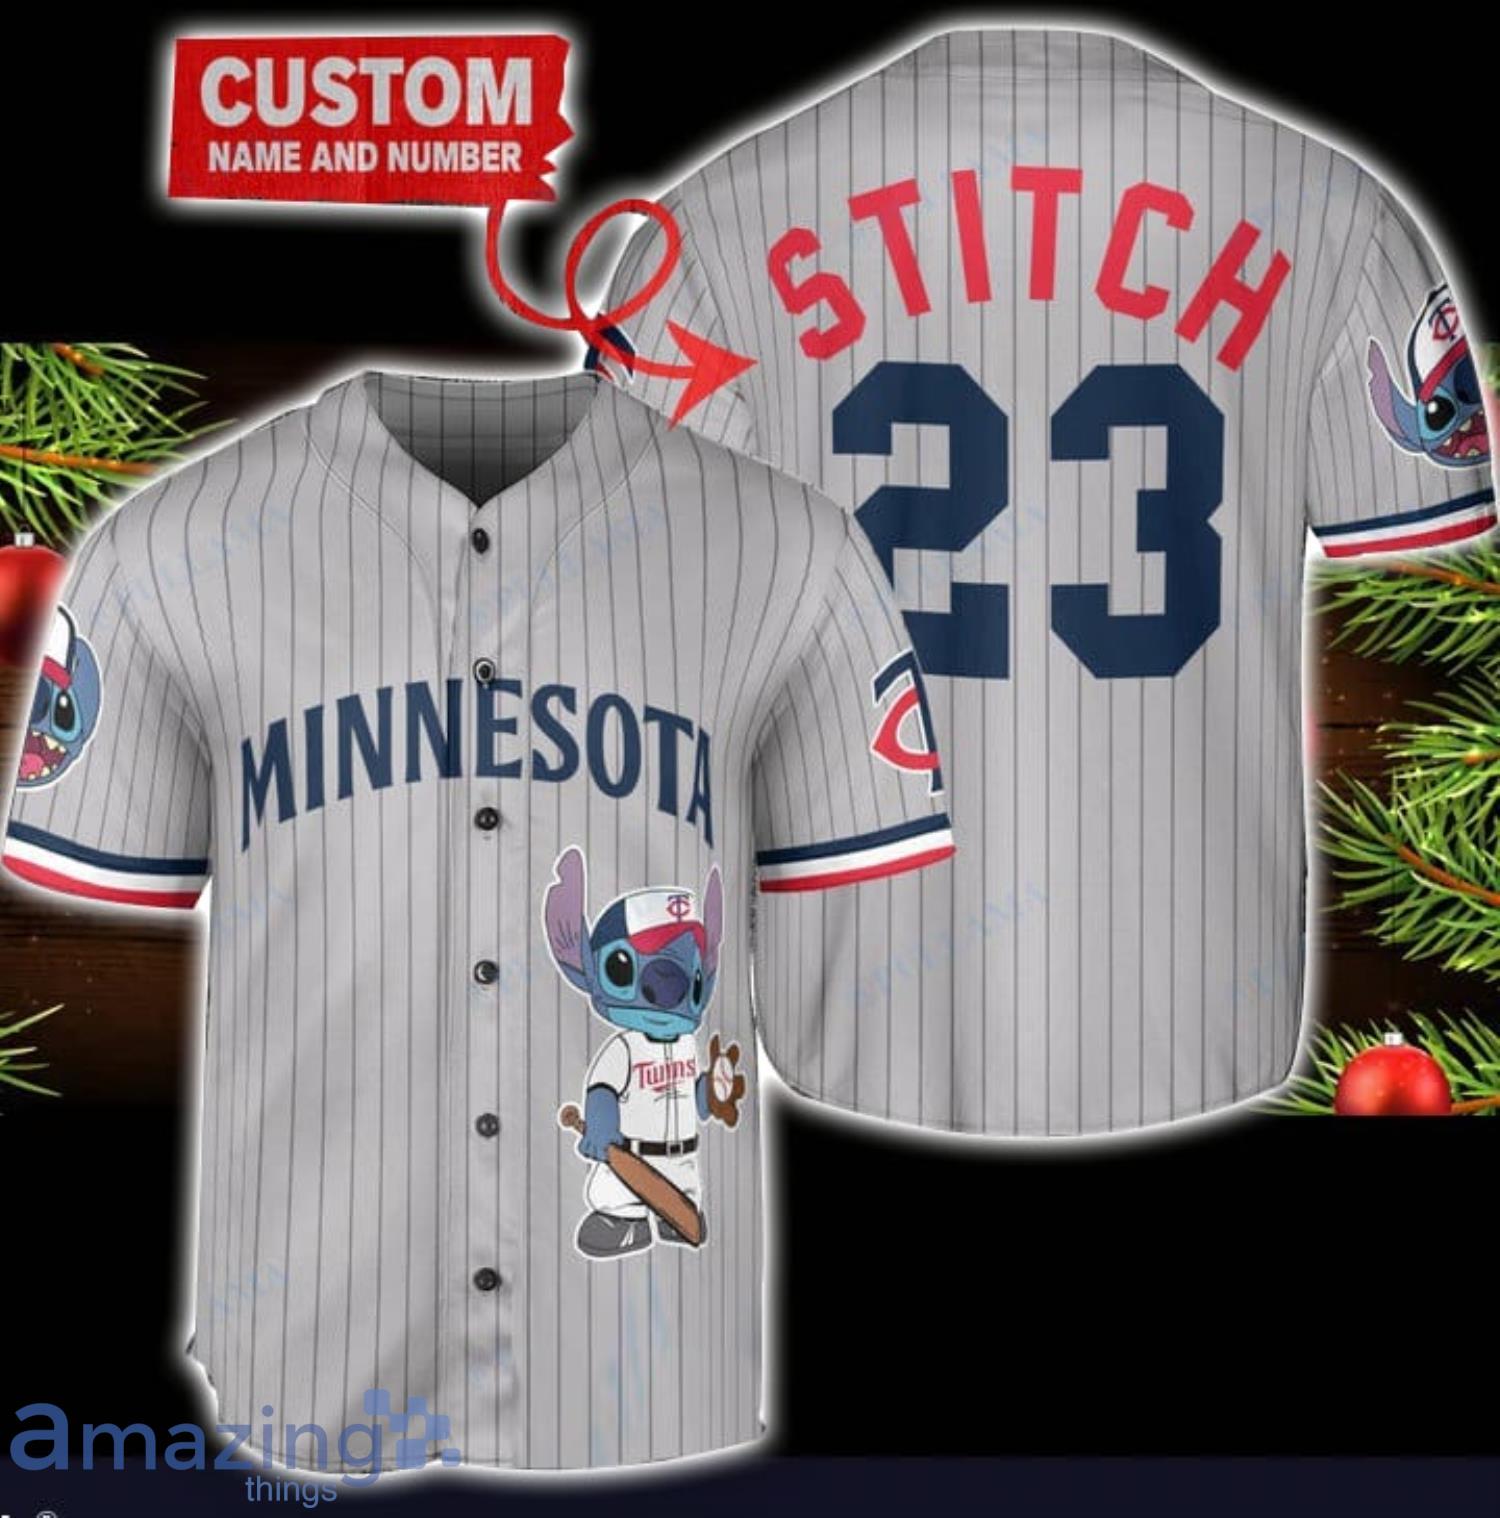 Minnesota Twins Personalized Name MLB Fans Stitch Baseball Jersey